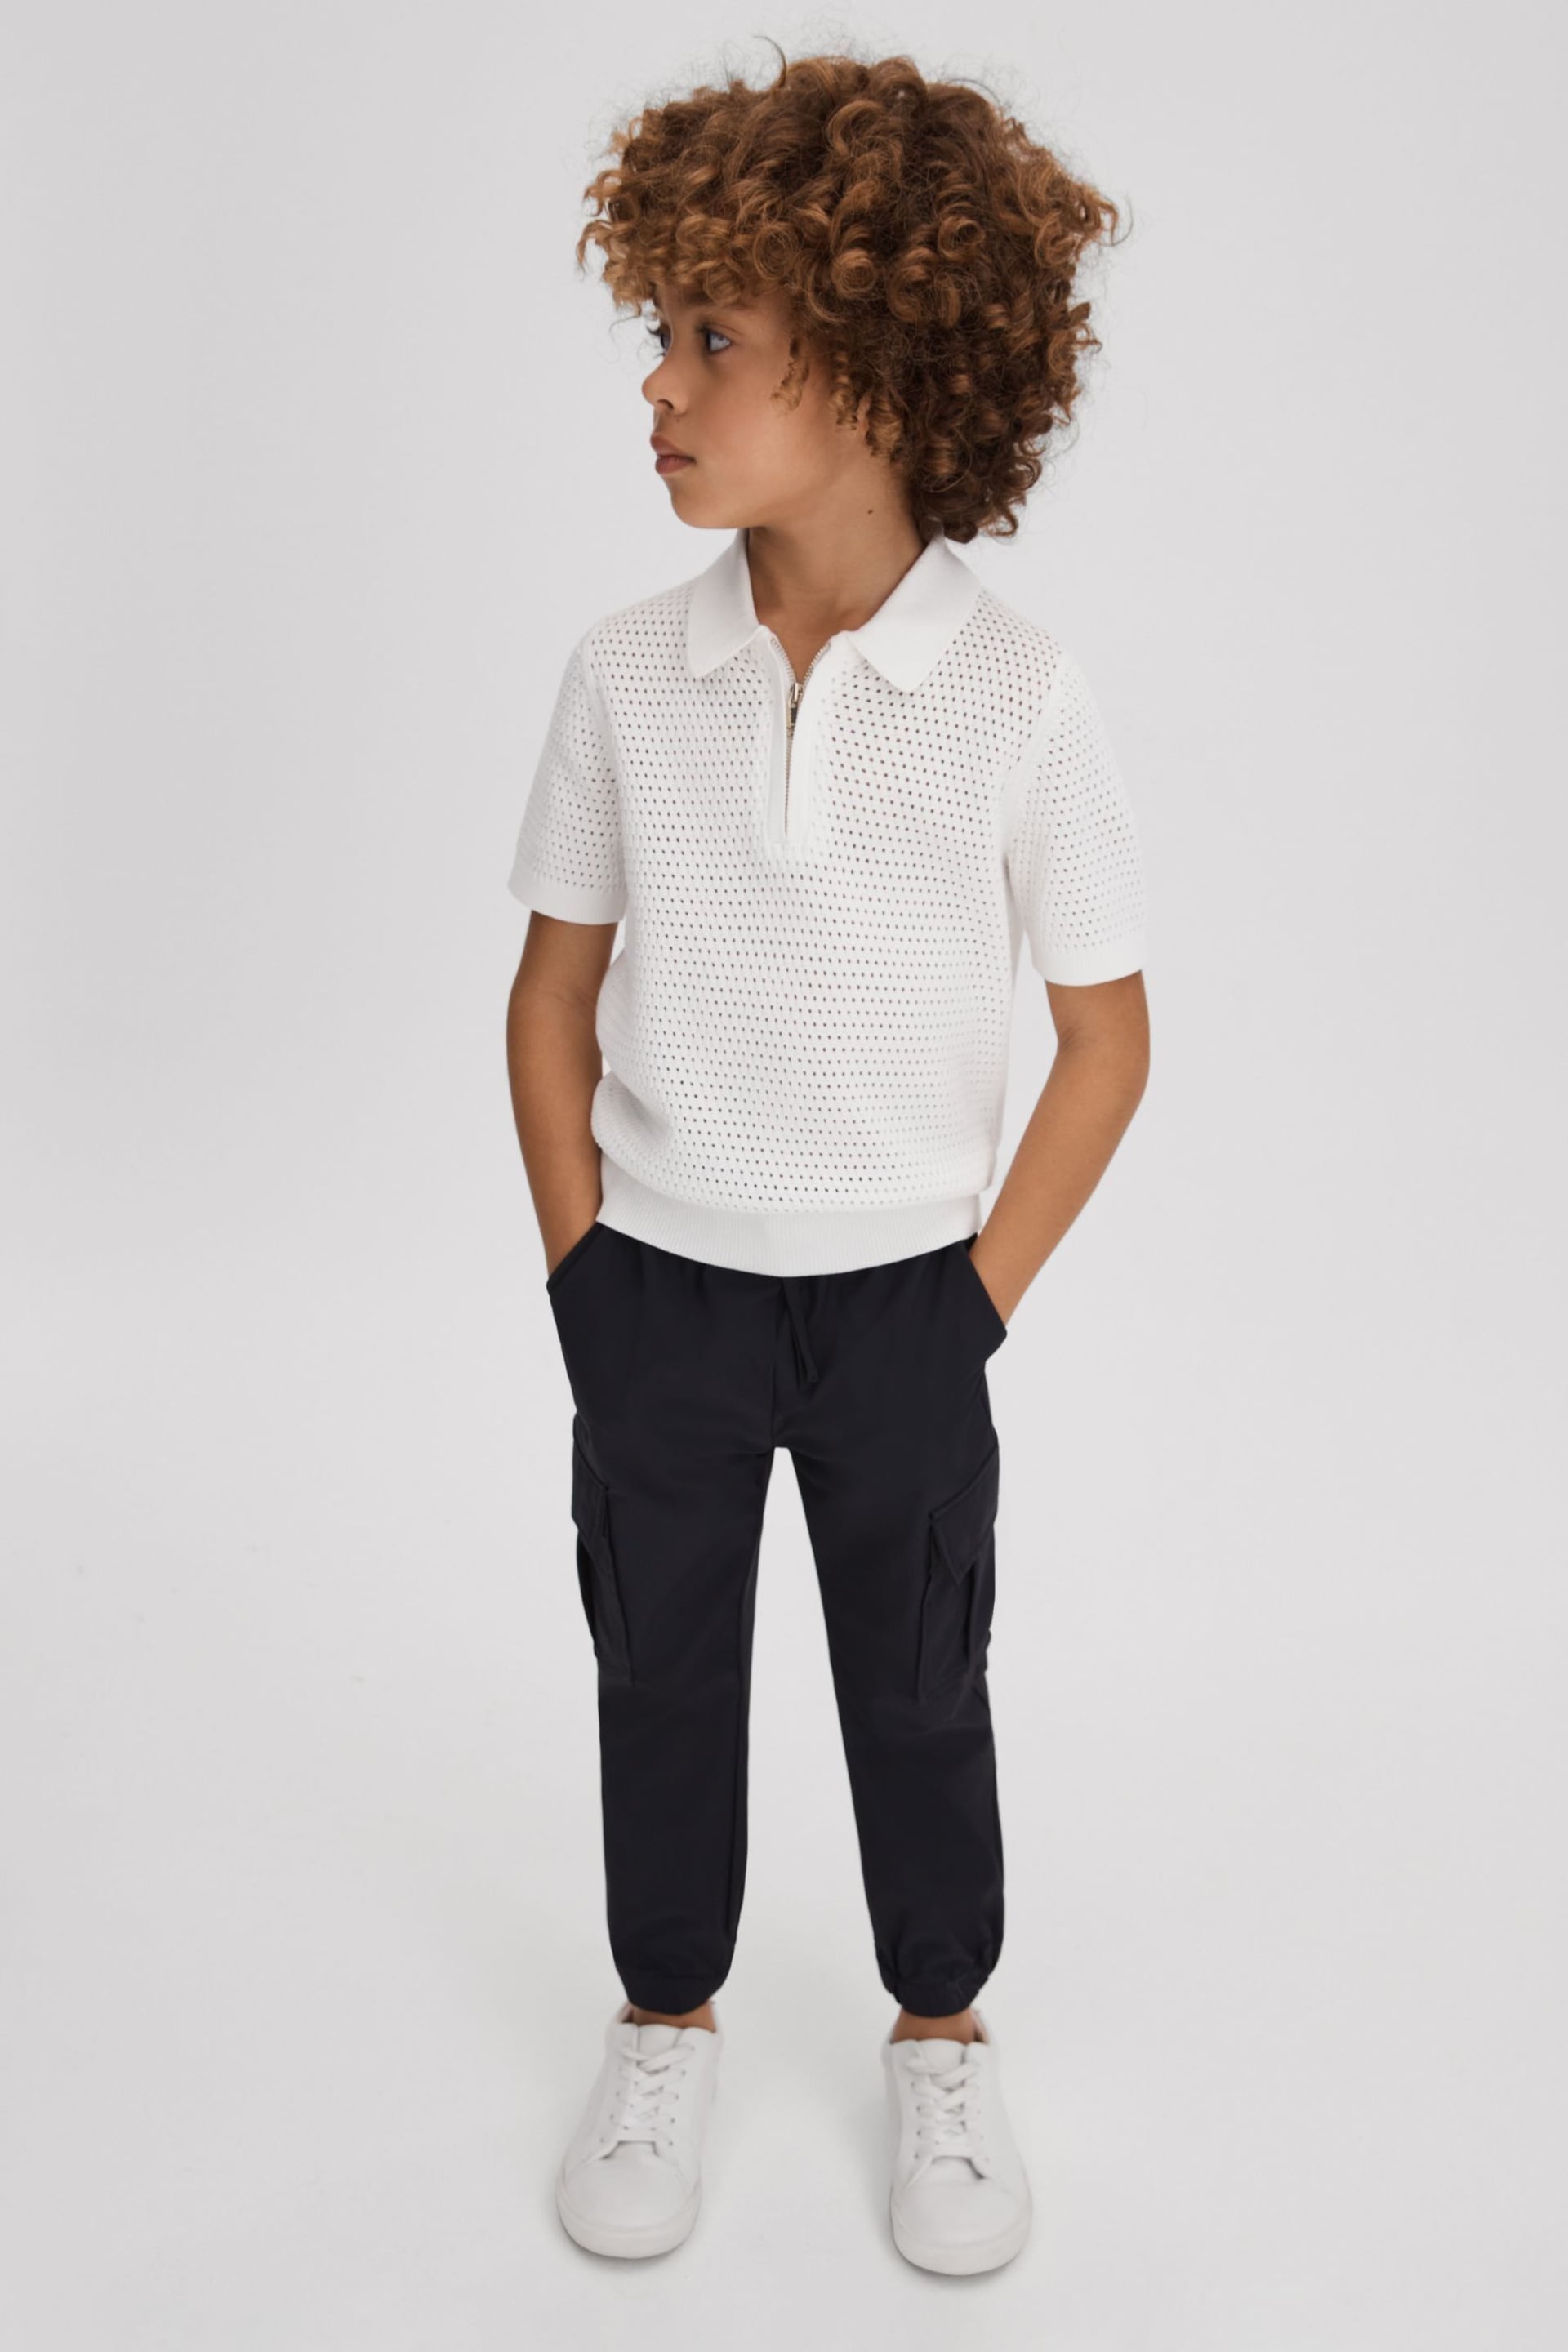 Reiss Optic White Burnham Teen Textured Half-Zip Polo T-Shirt - Image 2 of 4